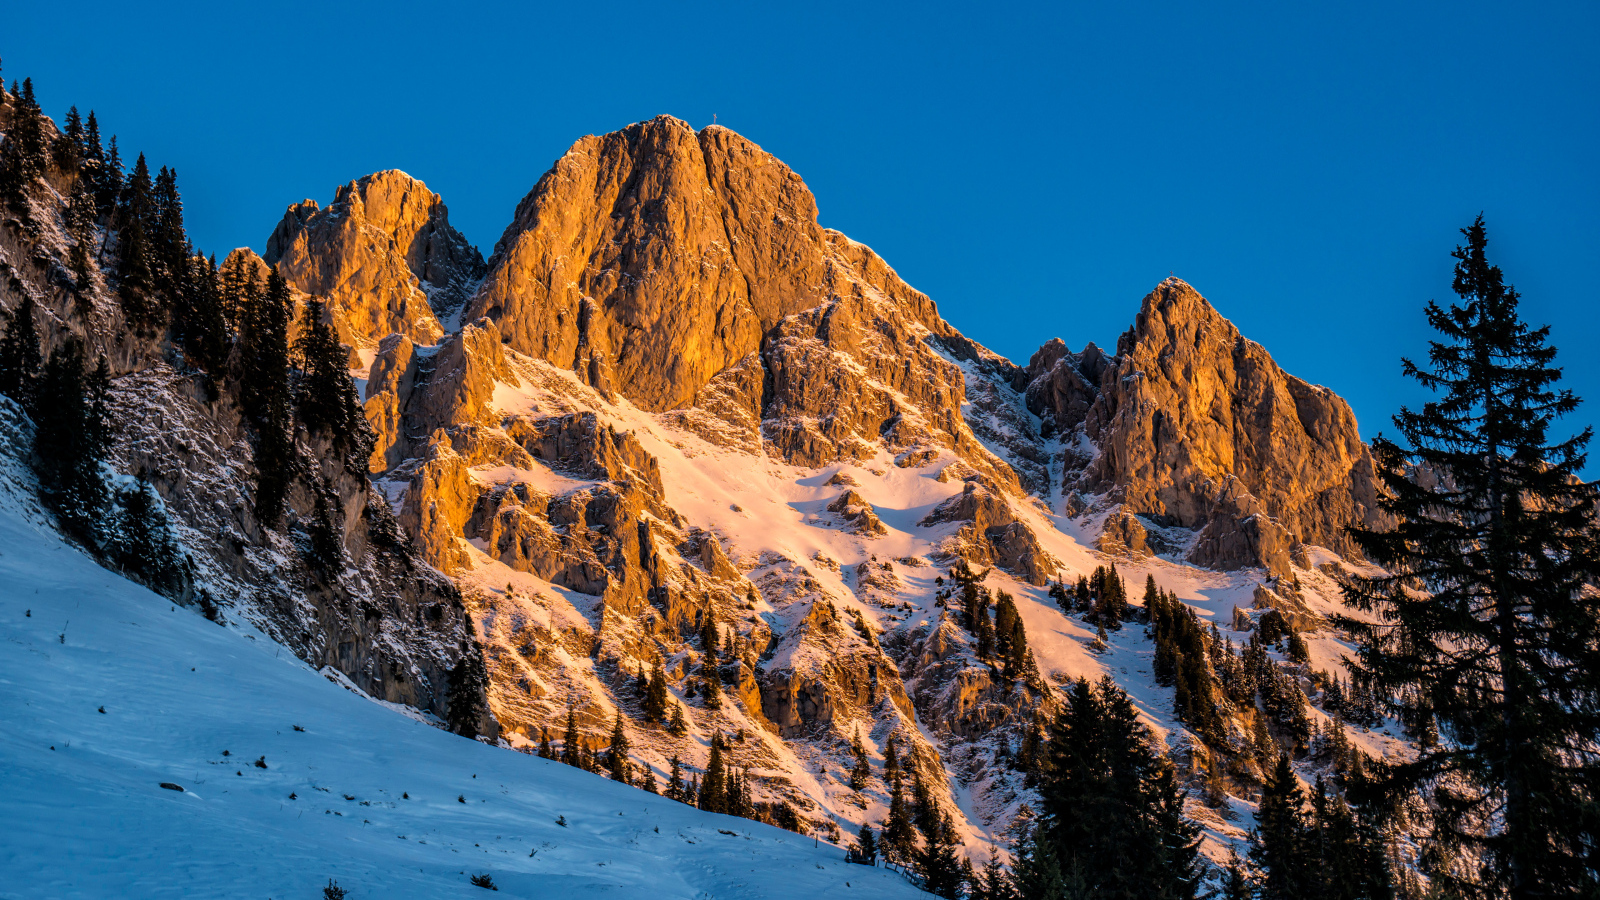 Австрийские альпы в снегу